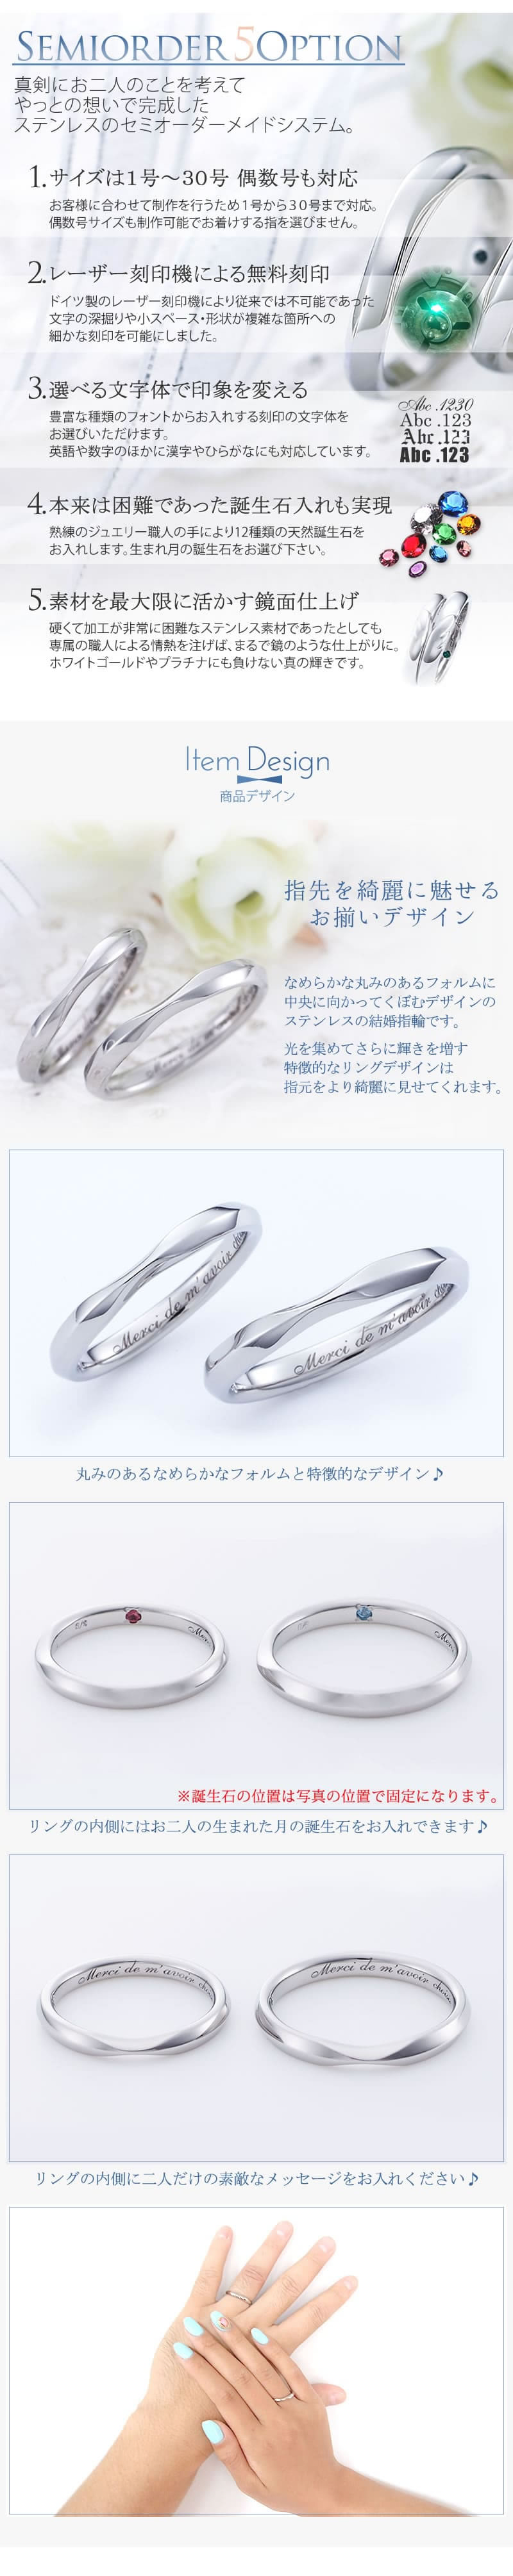 【結婚指輪】セミオーダーメイドステンレスリング ST109R-KS